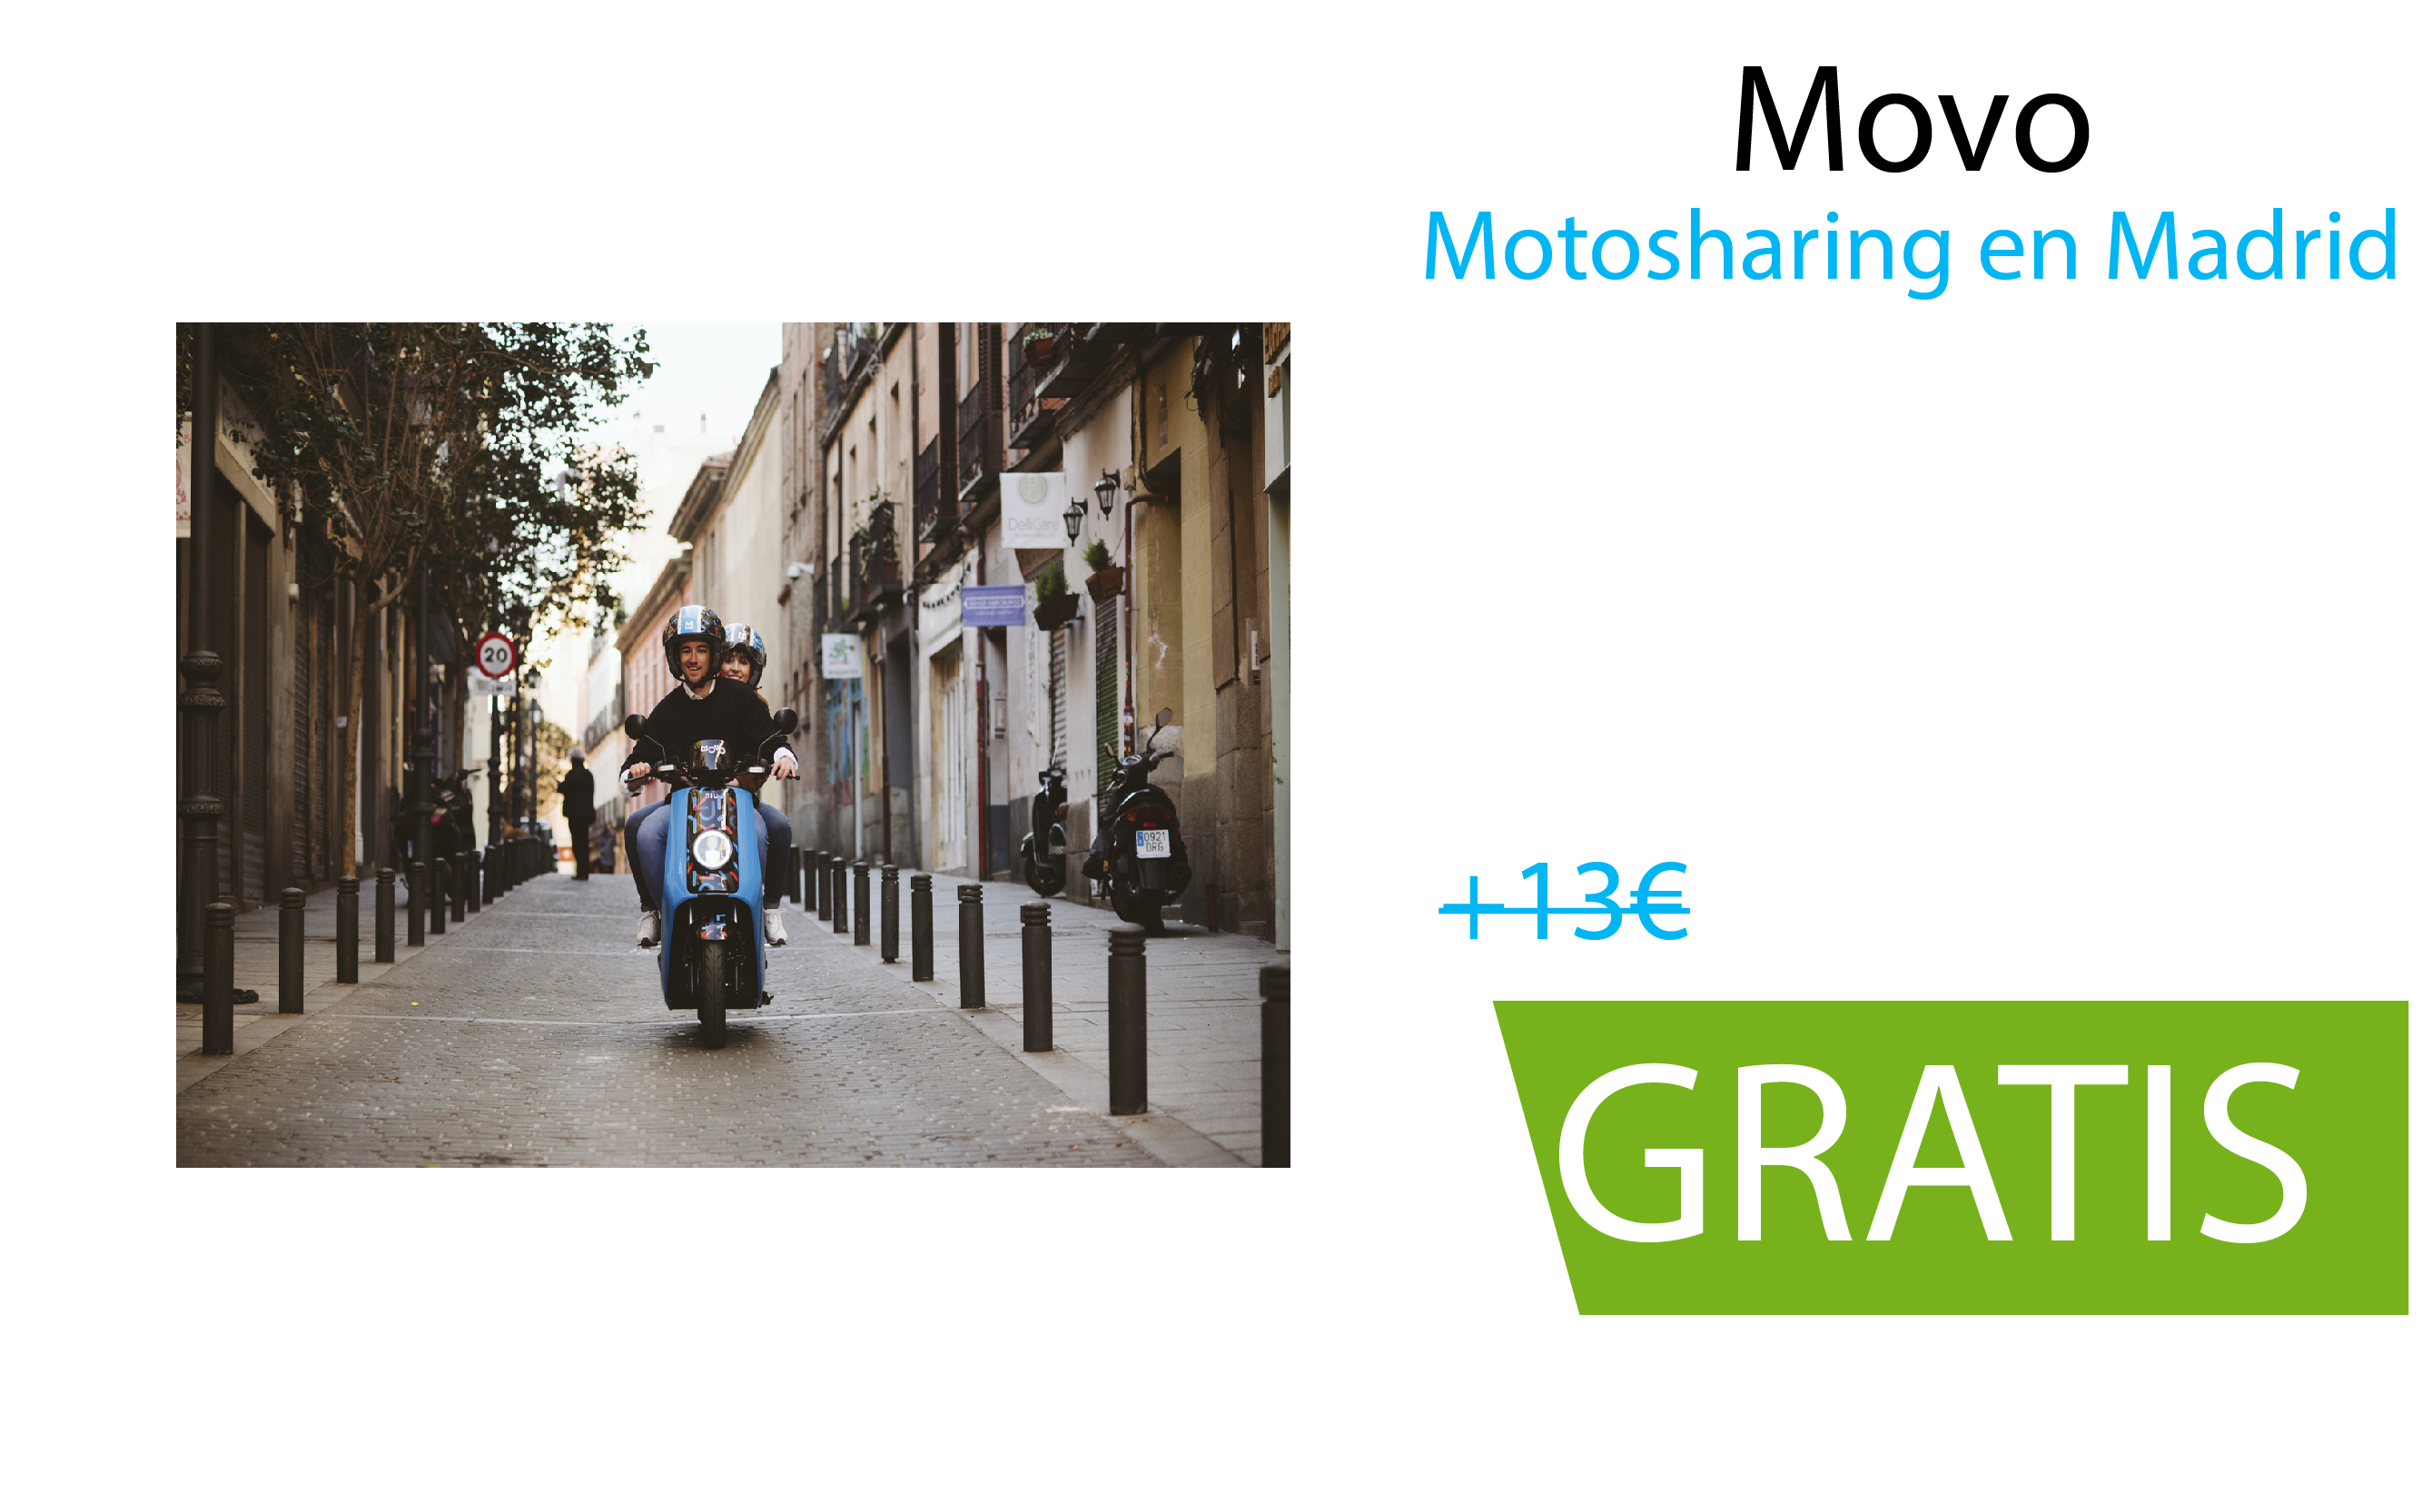 Movo:  motosharing en Madrid. 60 minutos gratis